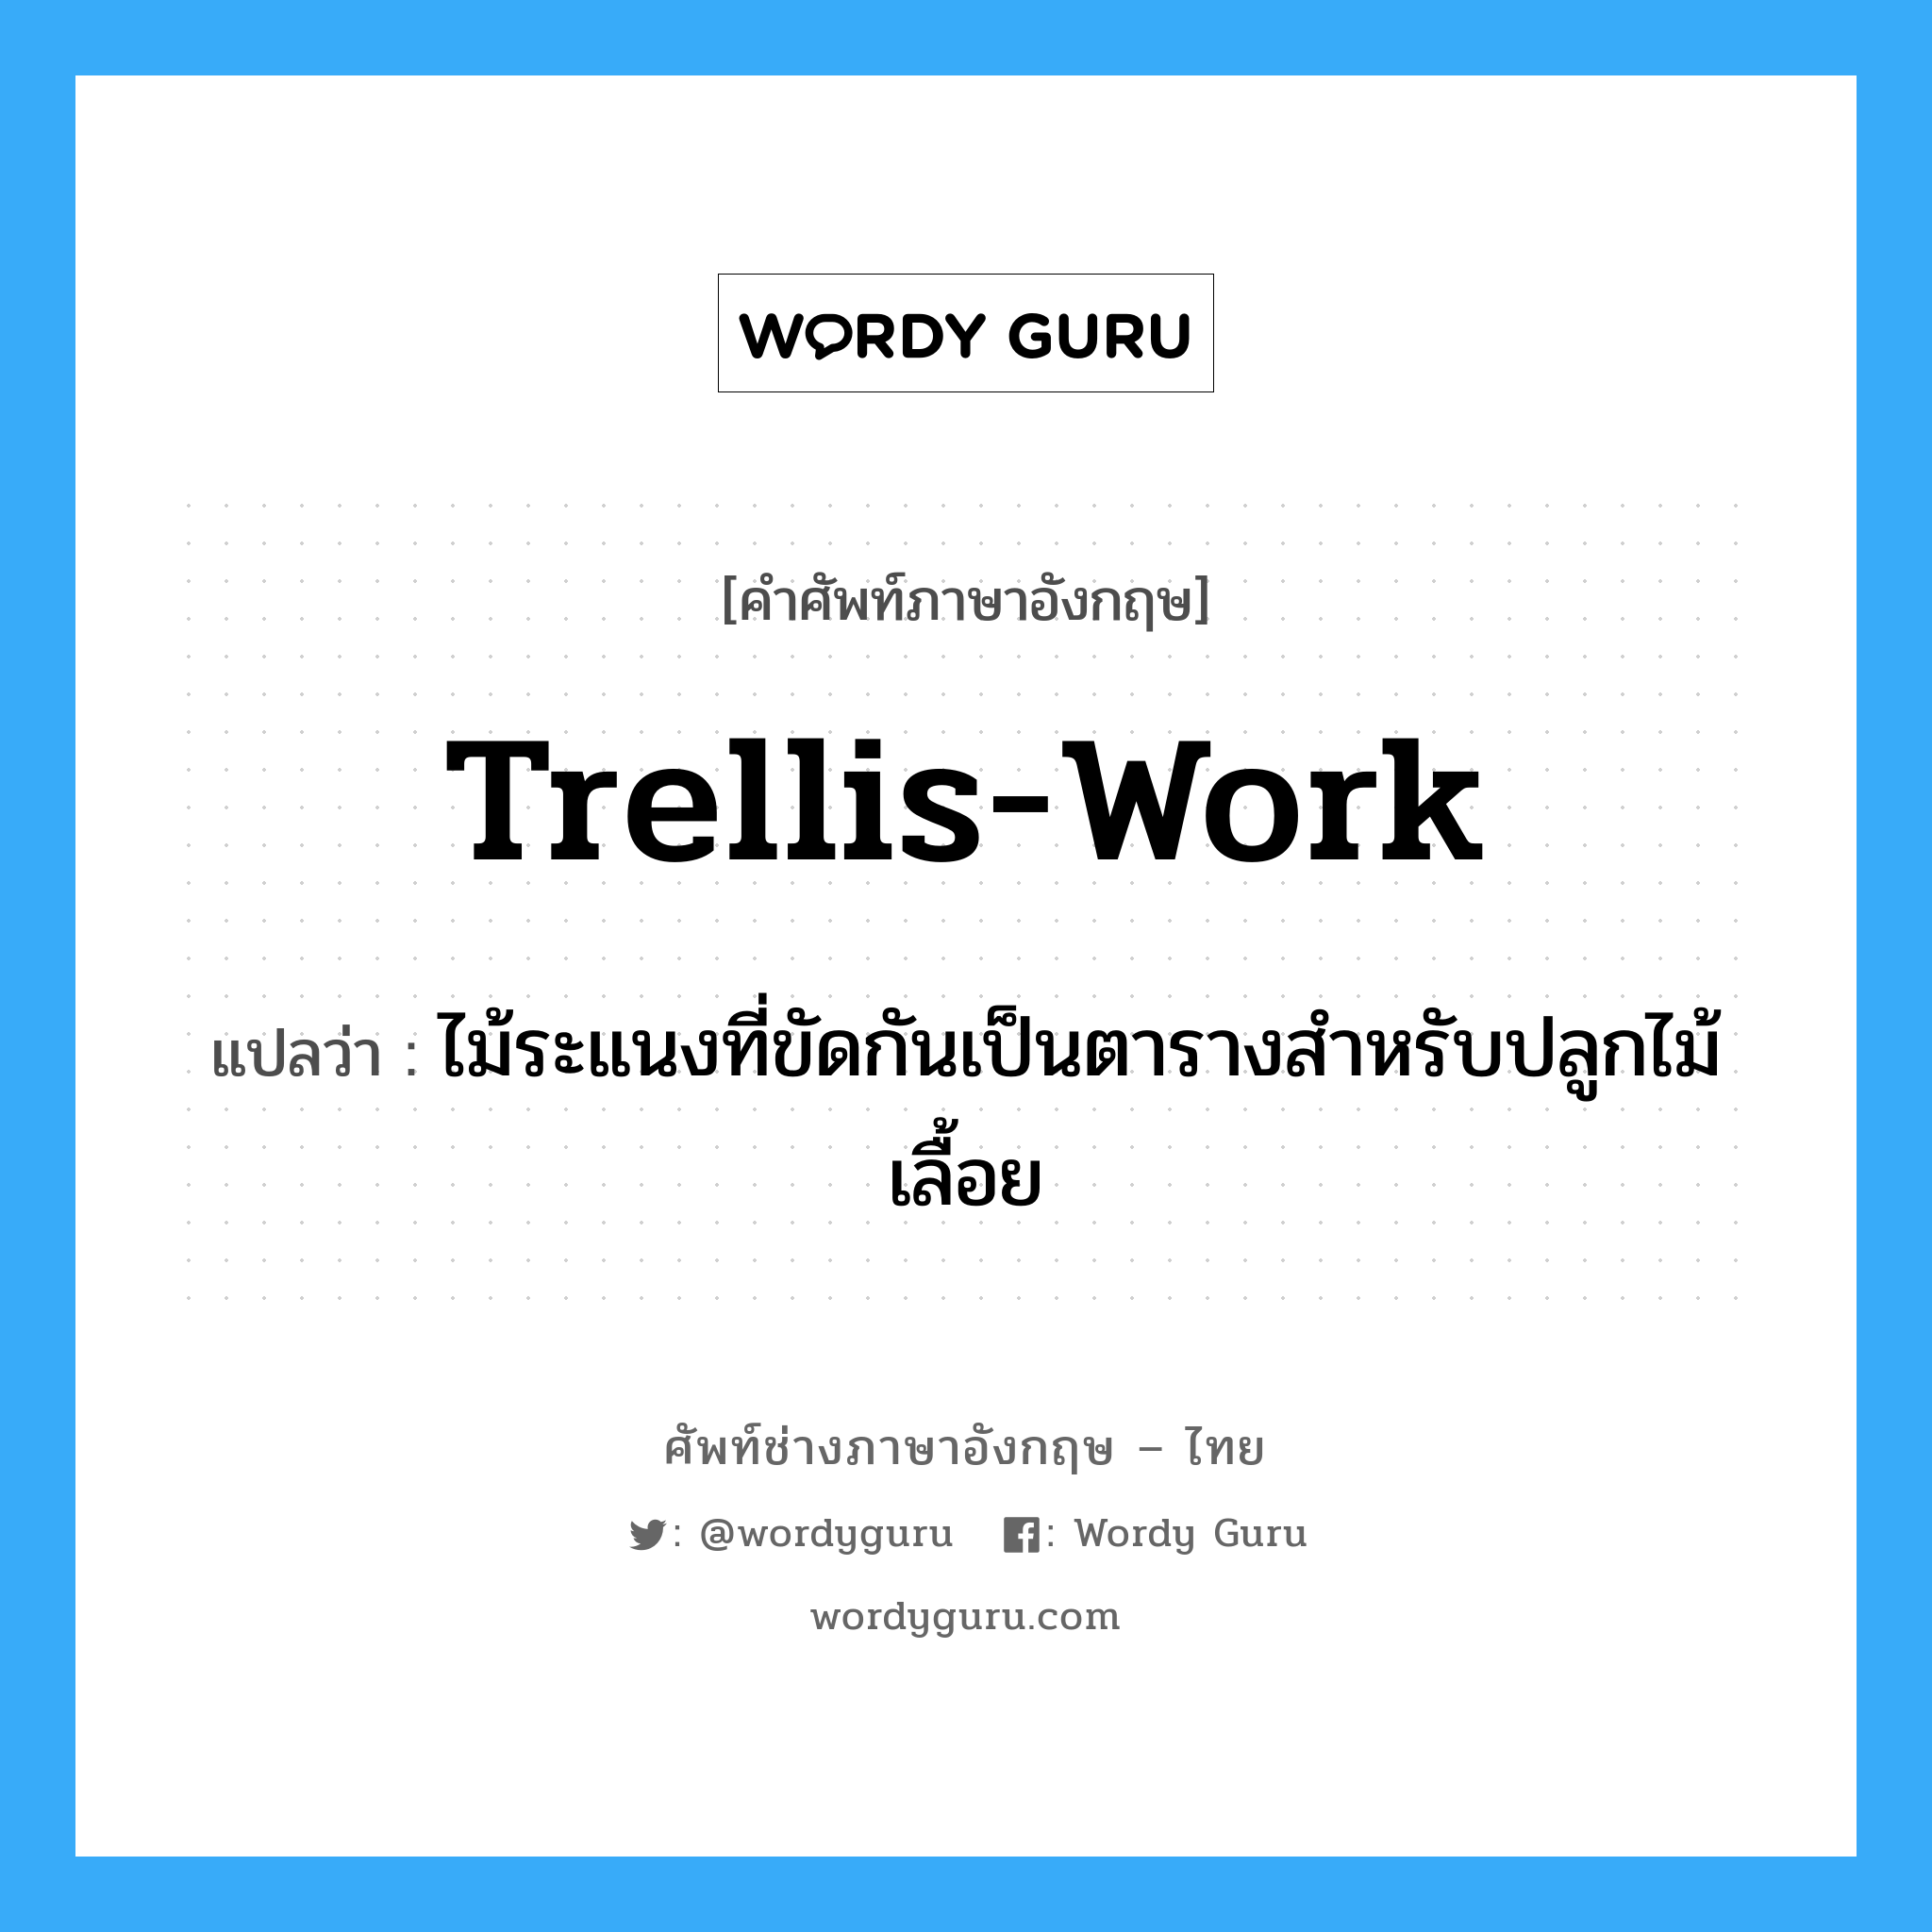 trellis-work แปลว่า?, คำศัพท์ช่างภาษาอังกฤษ - ไทย trellis-work คำศัพท์ภาษาอังกฤษ trellis-work แปลว่า ไม้ระแนงที่ขัดกันเป็นตารางสำหรับปลูกไม้เลื้อย